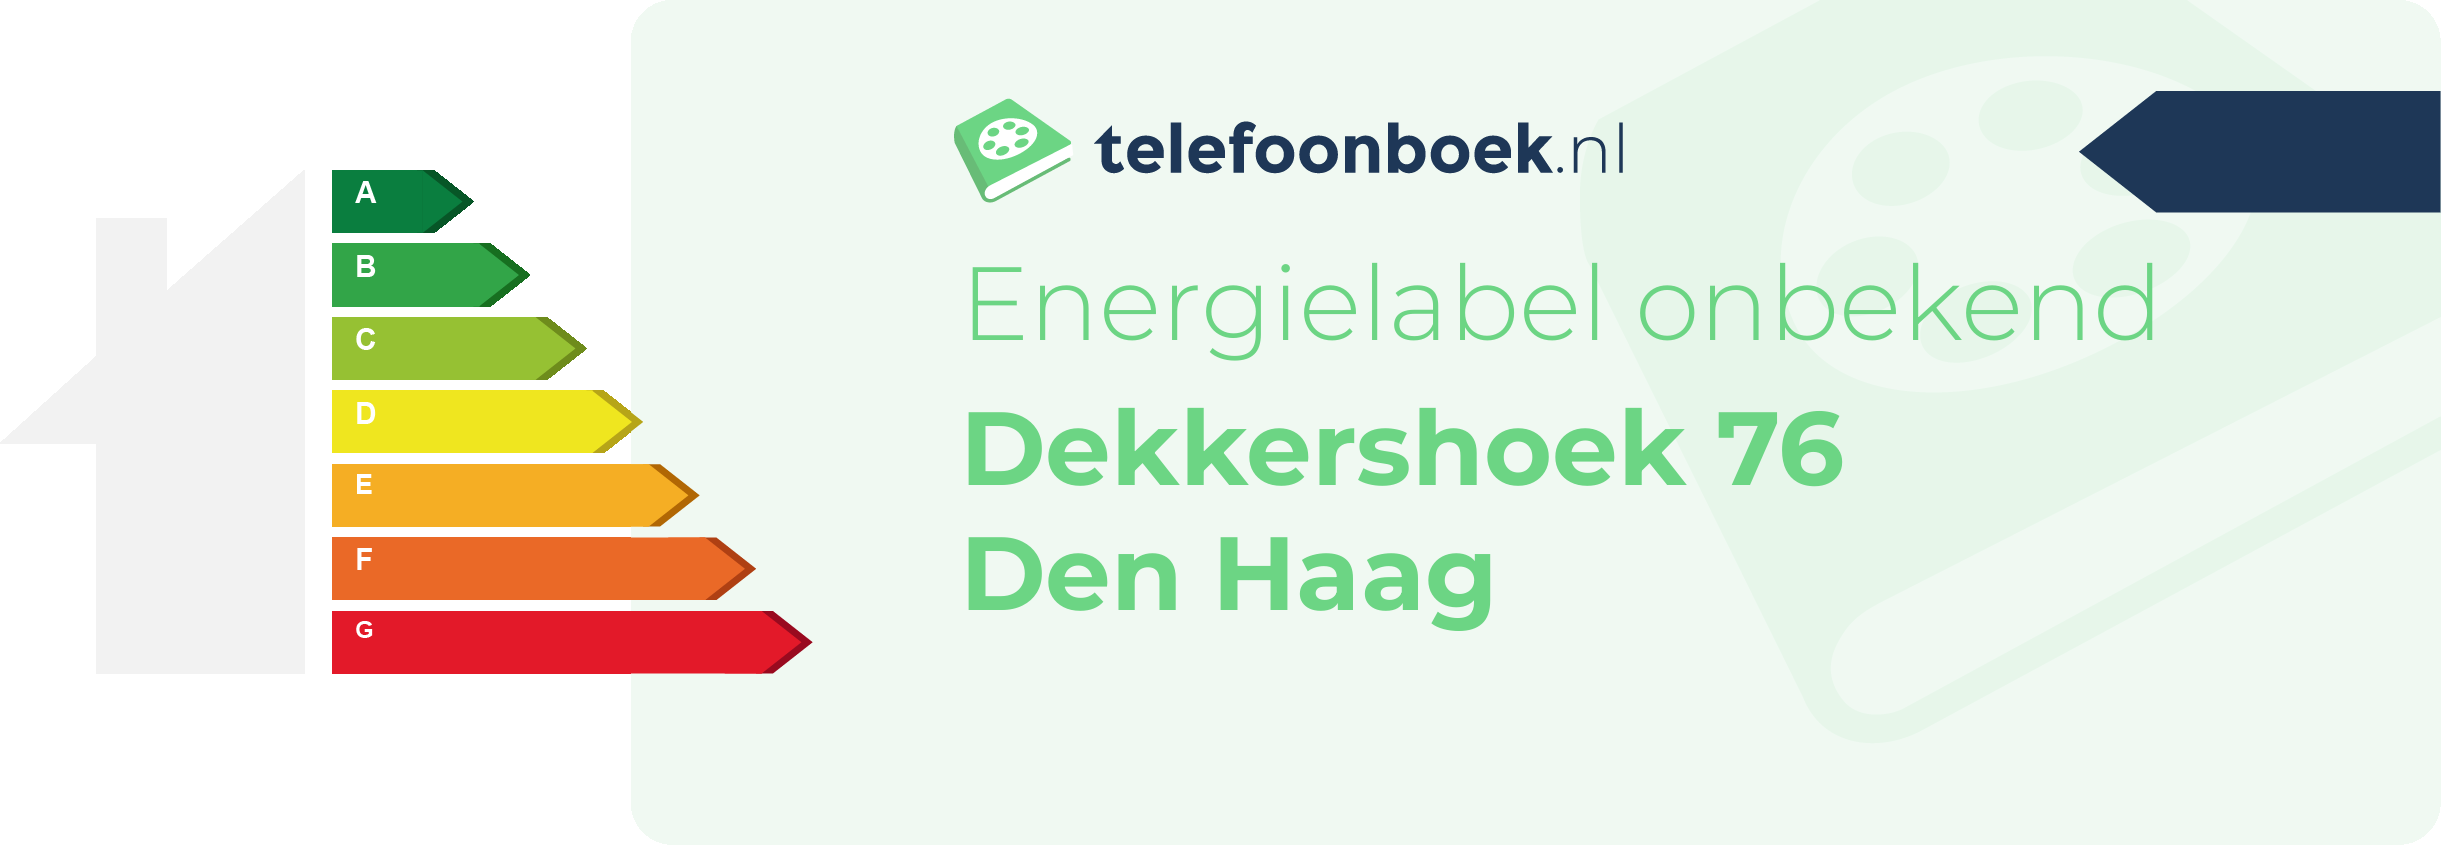 Energielabel Dekkershoek 76 Den Haag